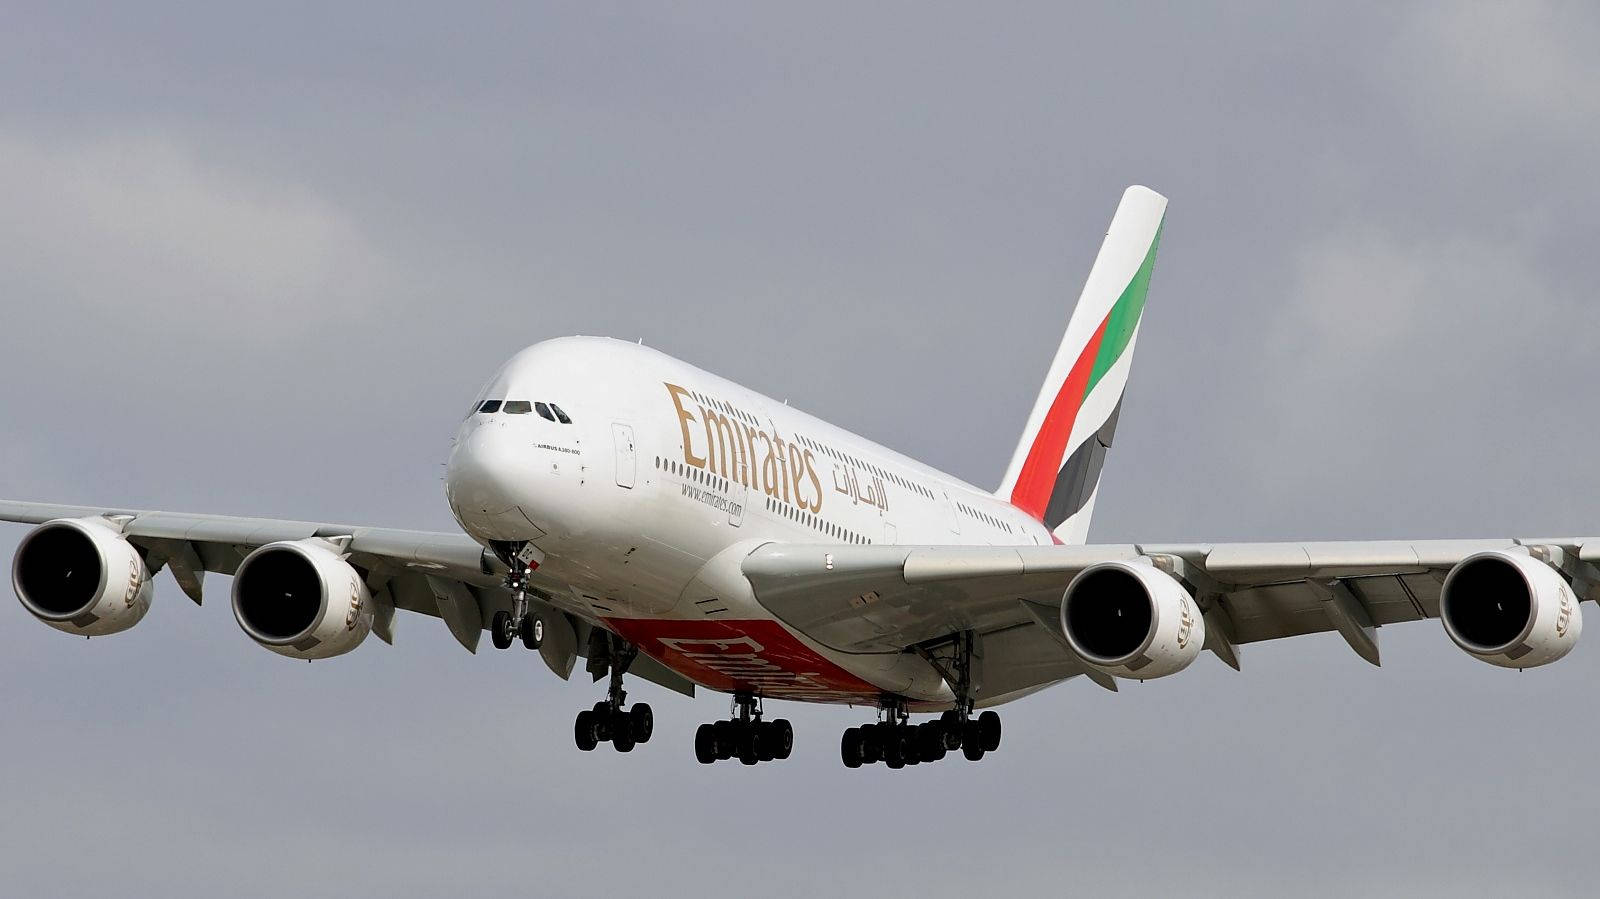 Emiratesairbus A380 Mit Fahrwerk. Wallpaper